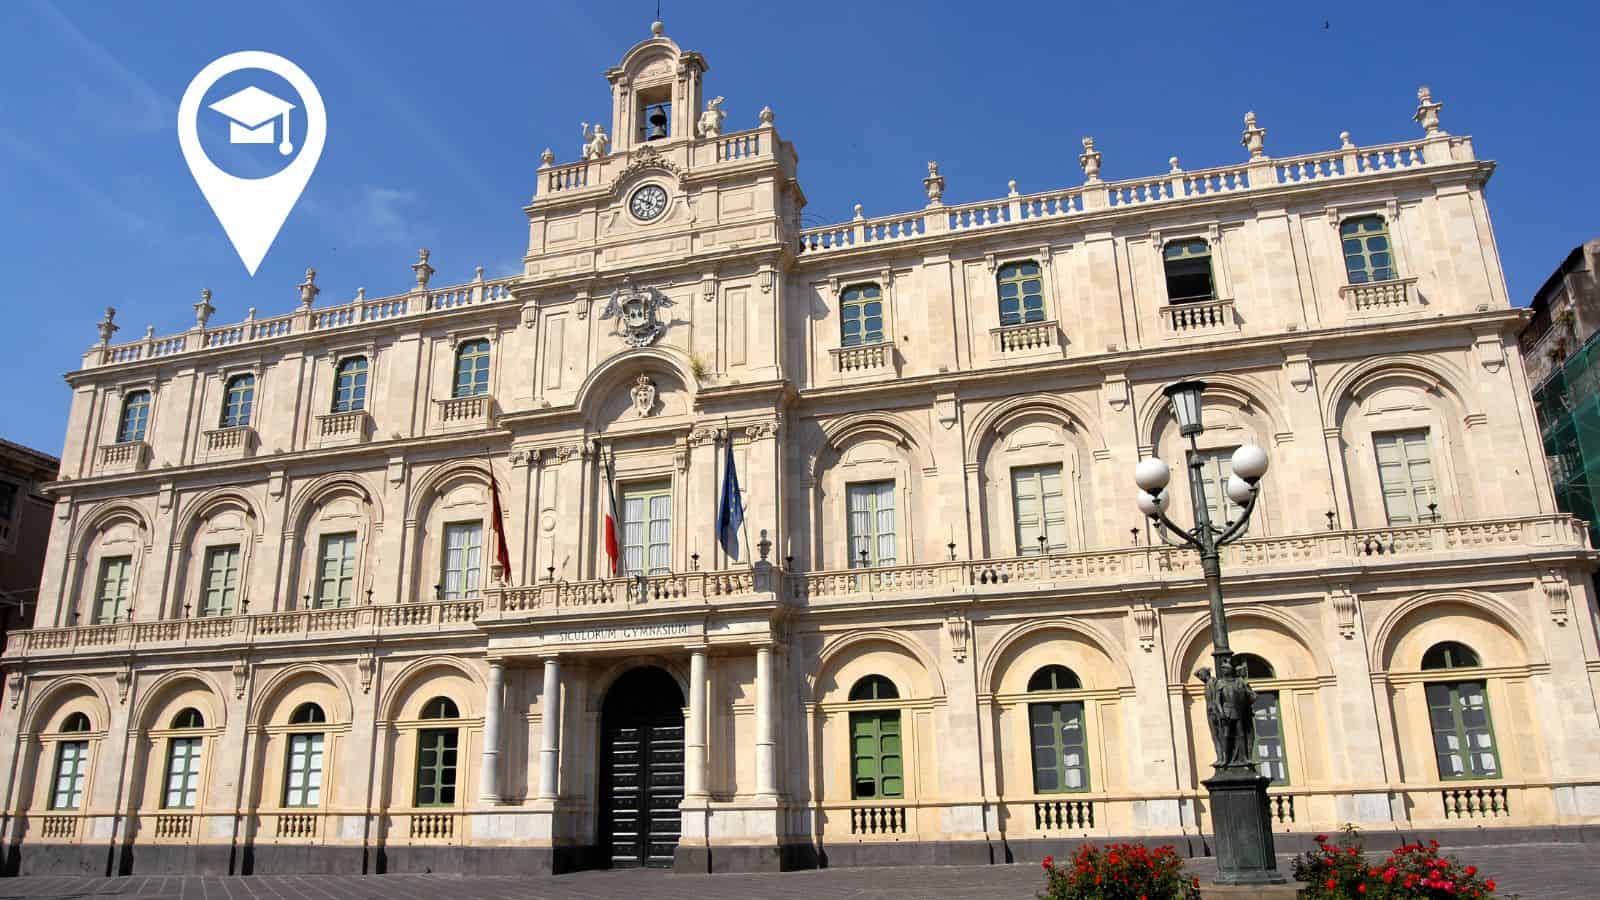 Il contributo dell'Università di Catania alla salute e al benessere dell'umanità